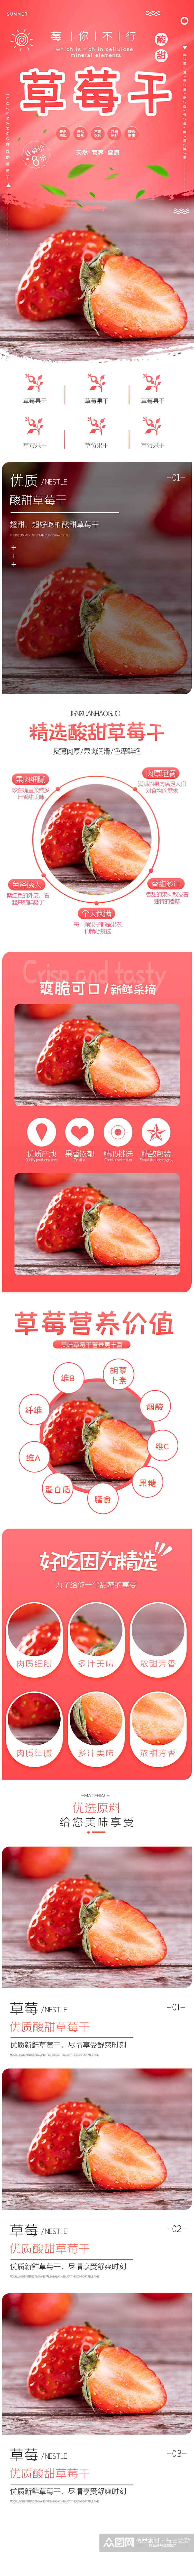 酸甜草莓干美食食品水果新鲜电商详情页素材